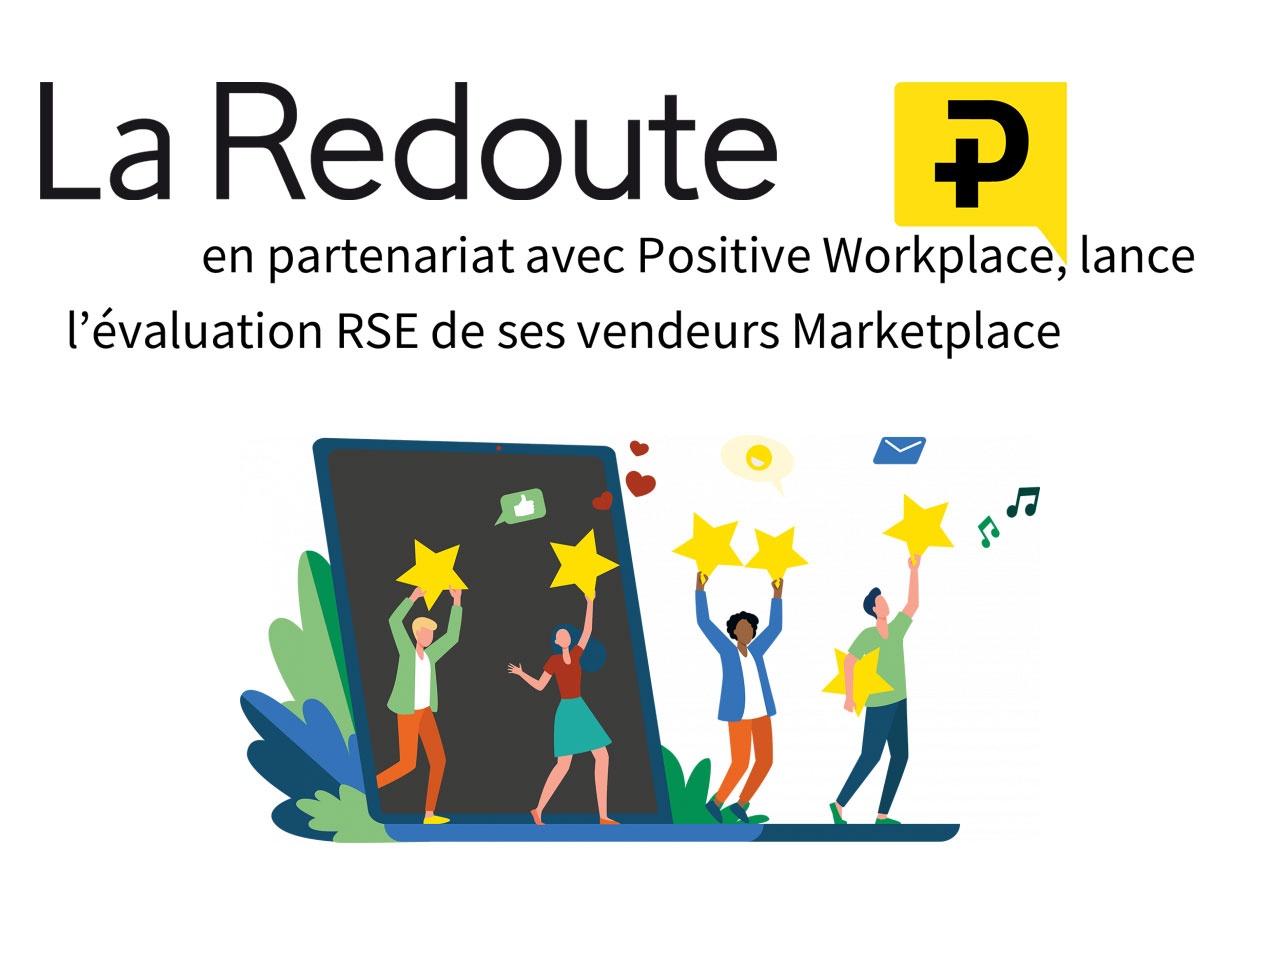 La Redoute, en partenariat avec Positive Workplace, lance l’évaluation RSE de ses vendeurs Marketplace